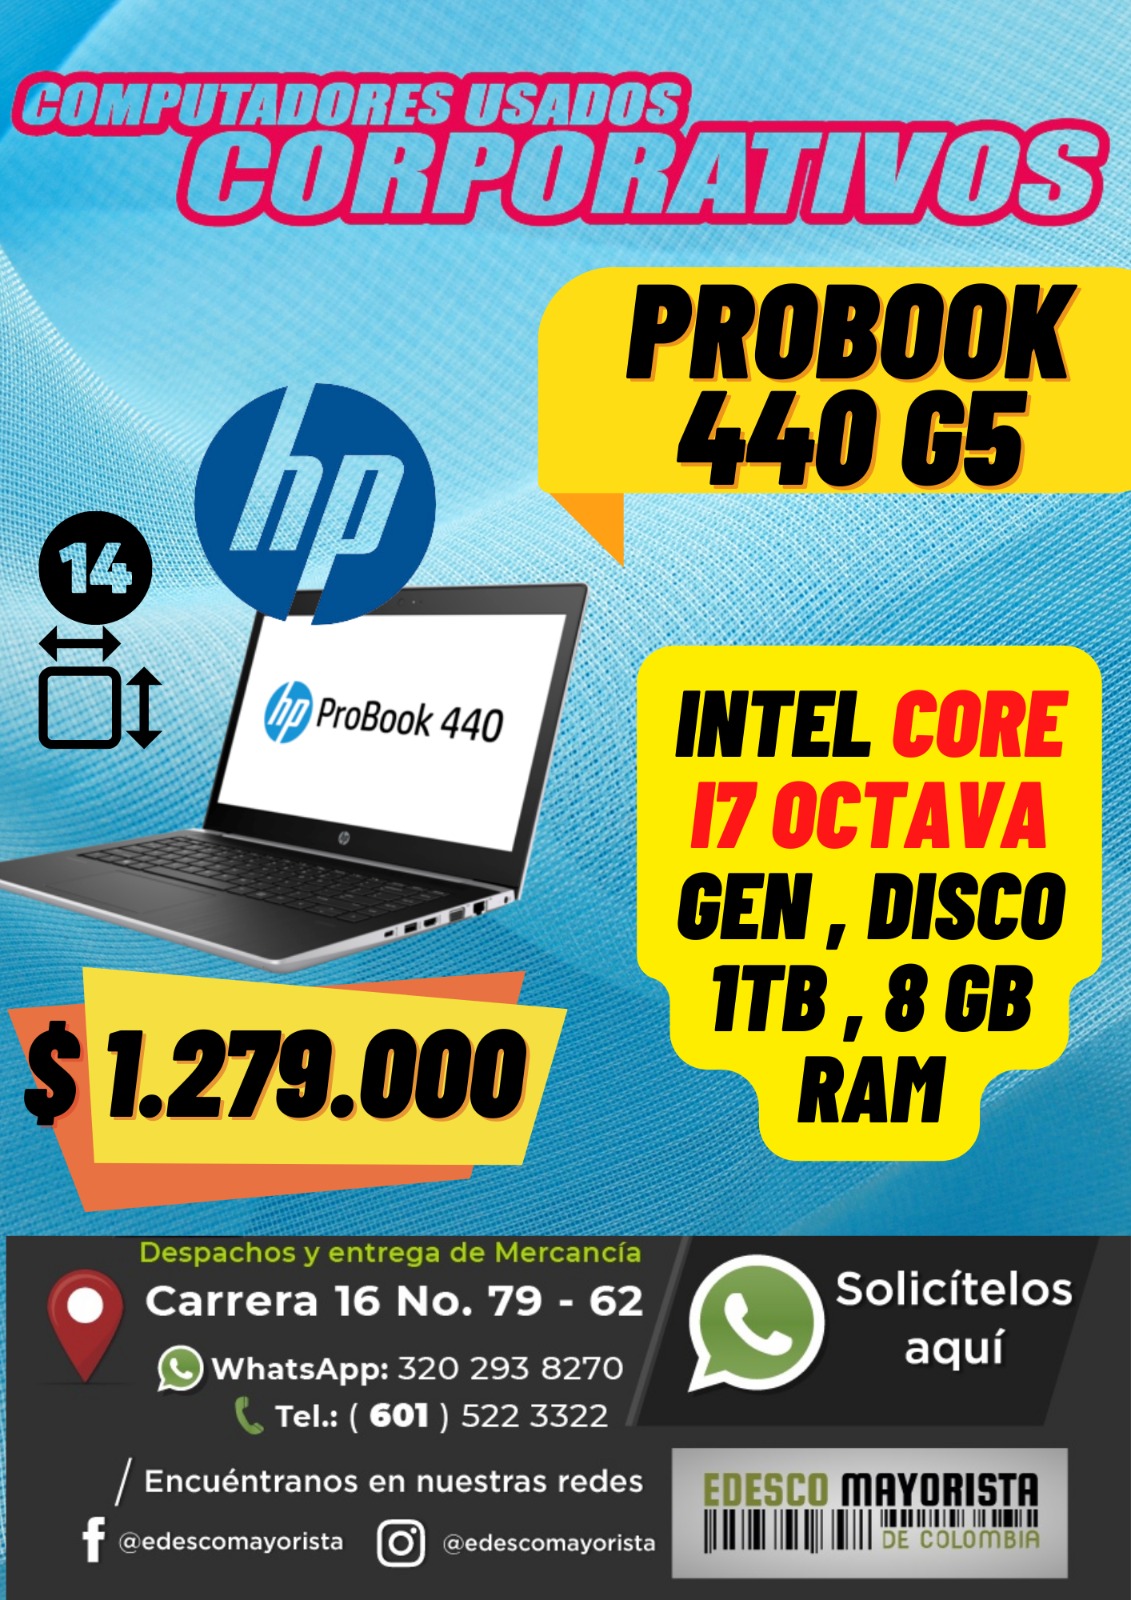 Probook 440 G5 Intel core i7